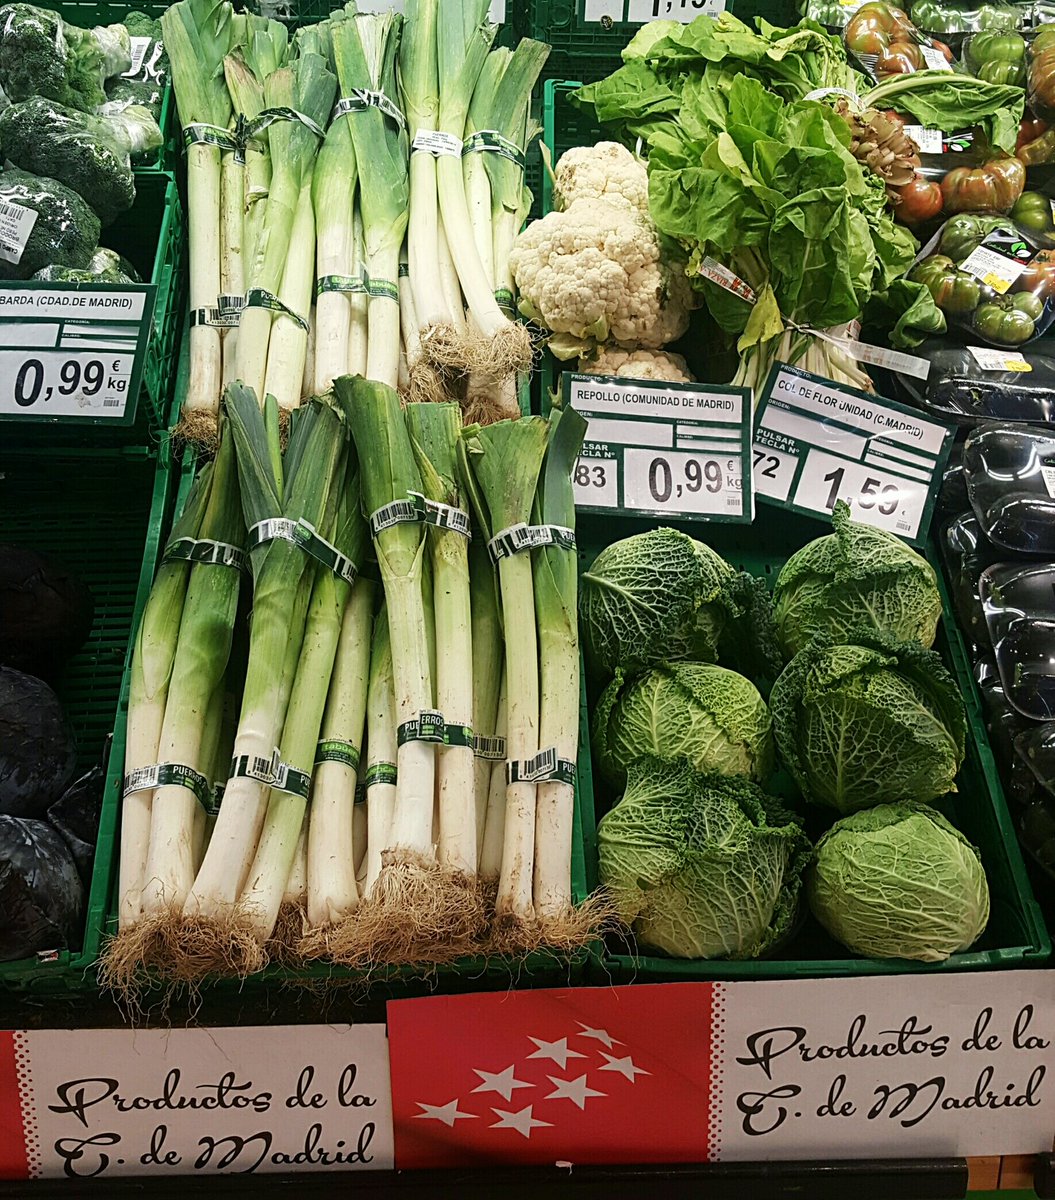 Me gusta encontrar en el #supermercado #ProductosDeMadrid #Madrid #alimentación #Huerta #CómeteMadrid #Castizosfera